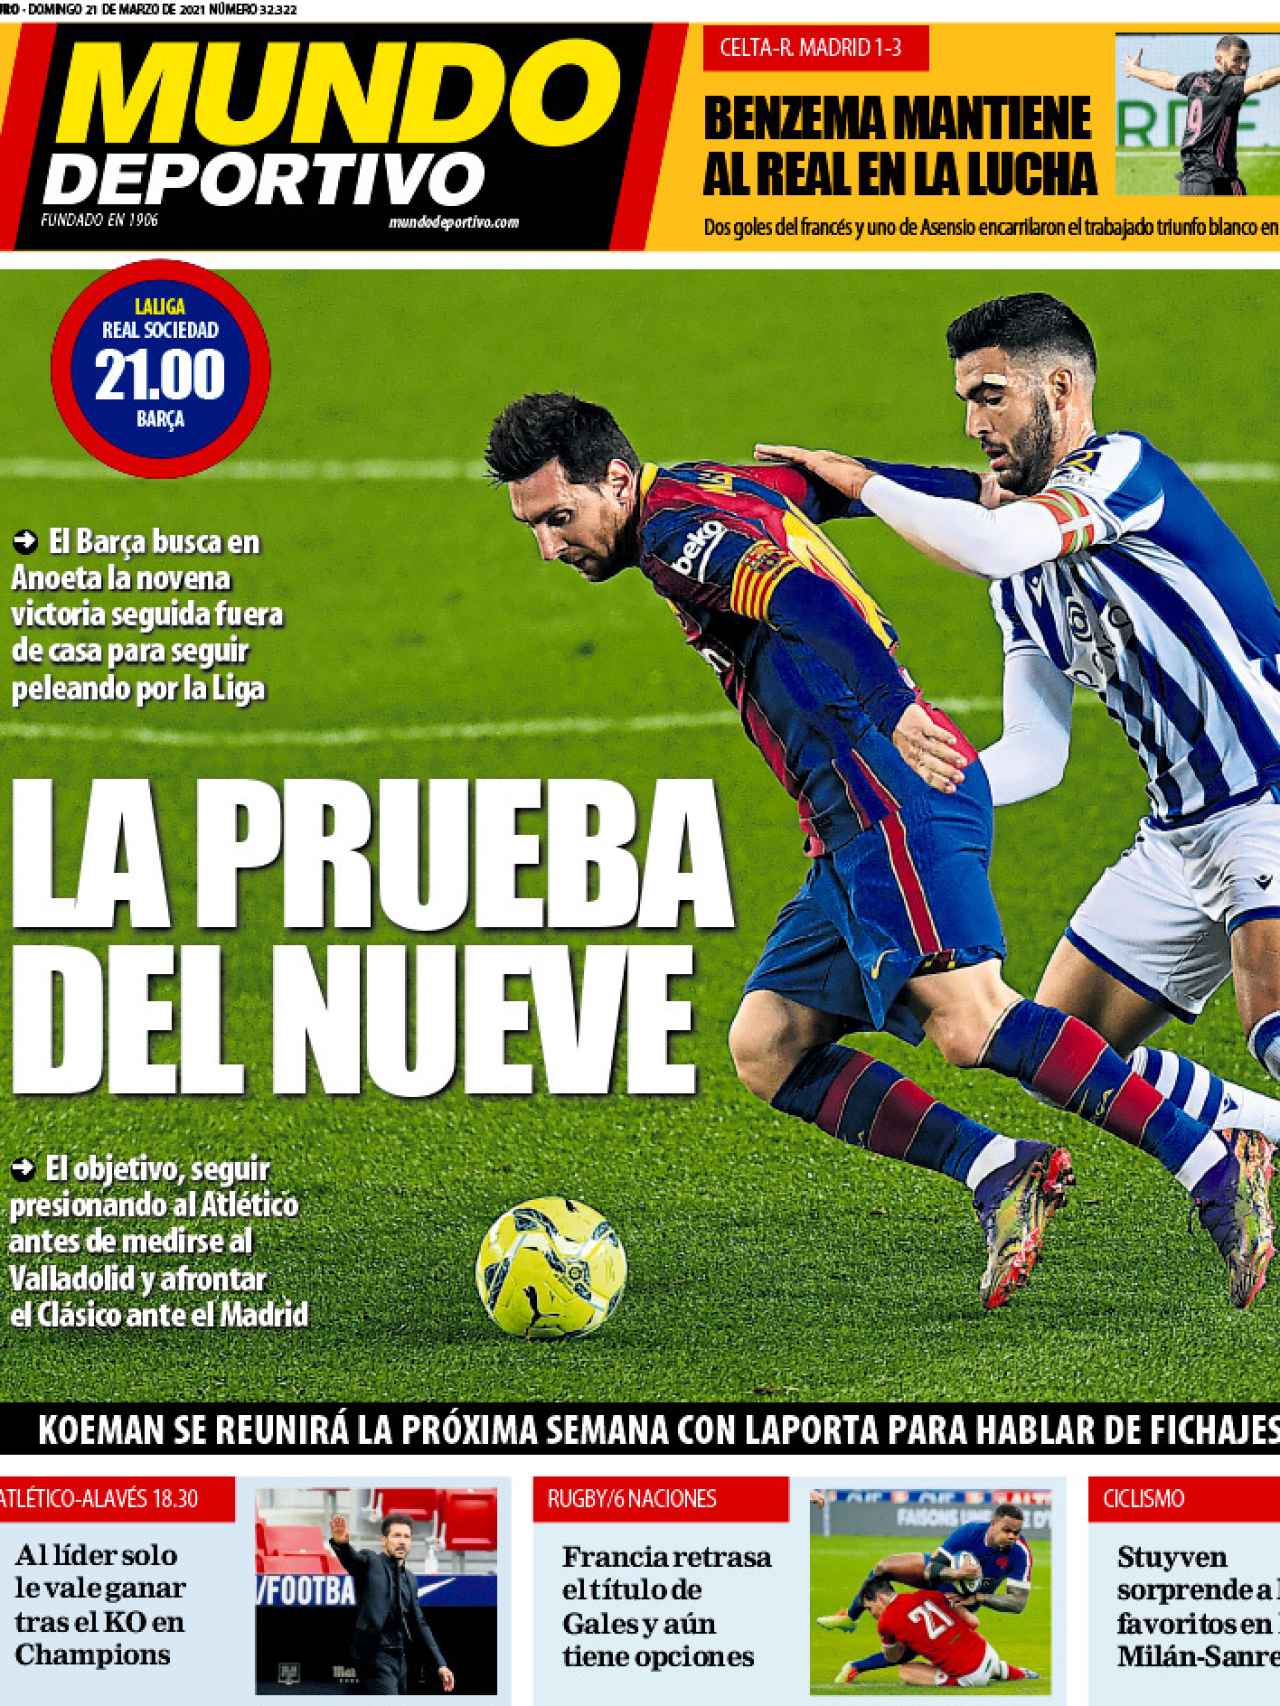 La portada del diario Mundo Deportivo (21/03/2021)